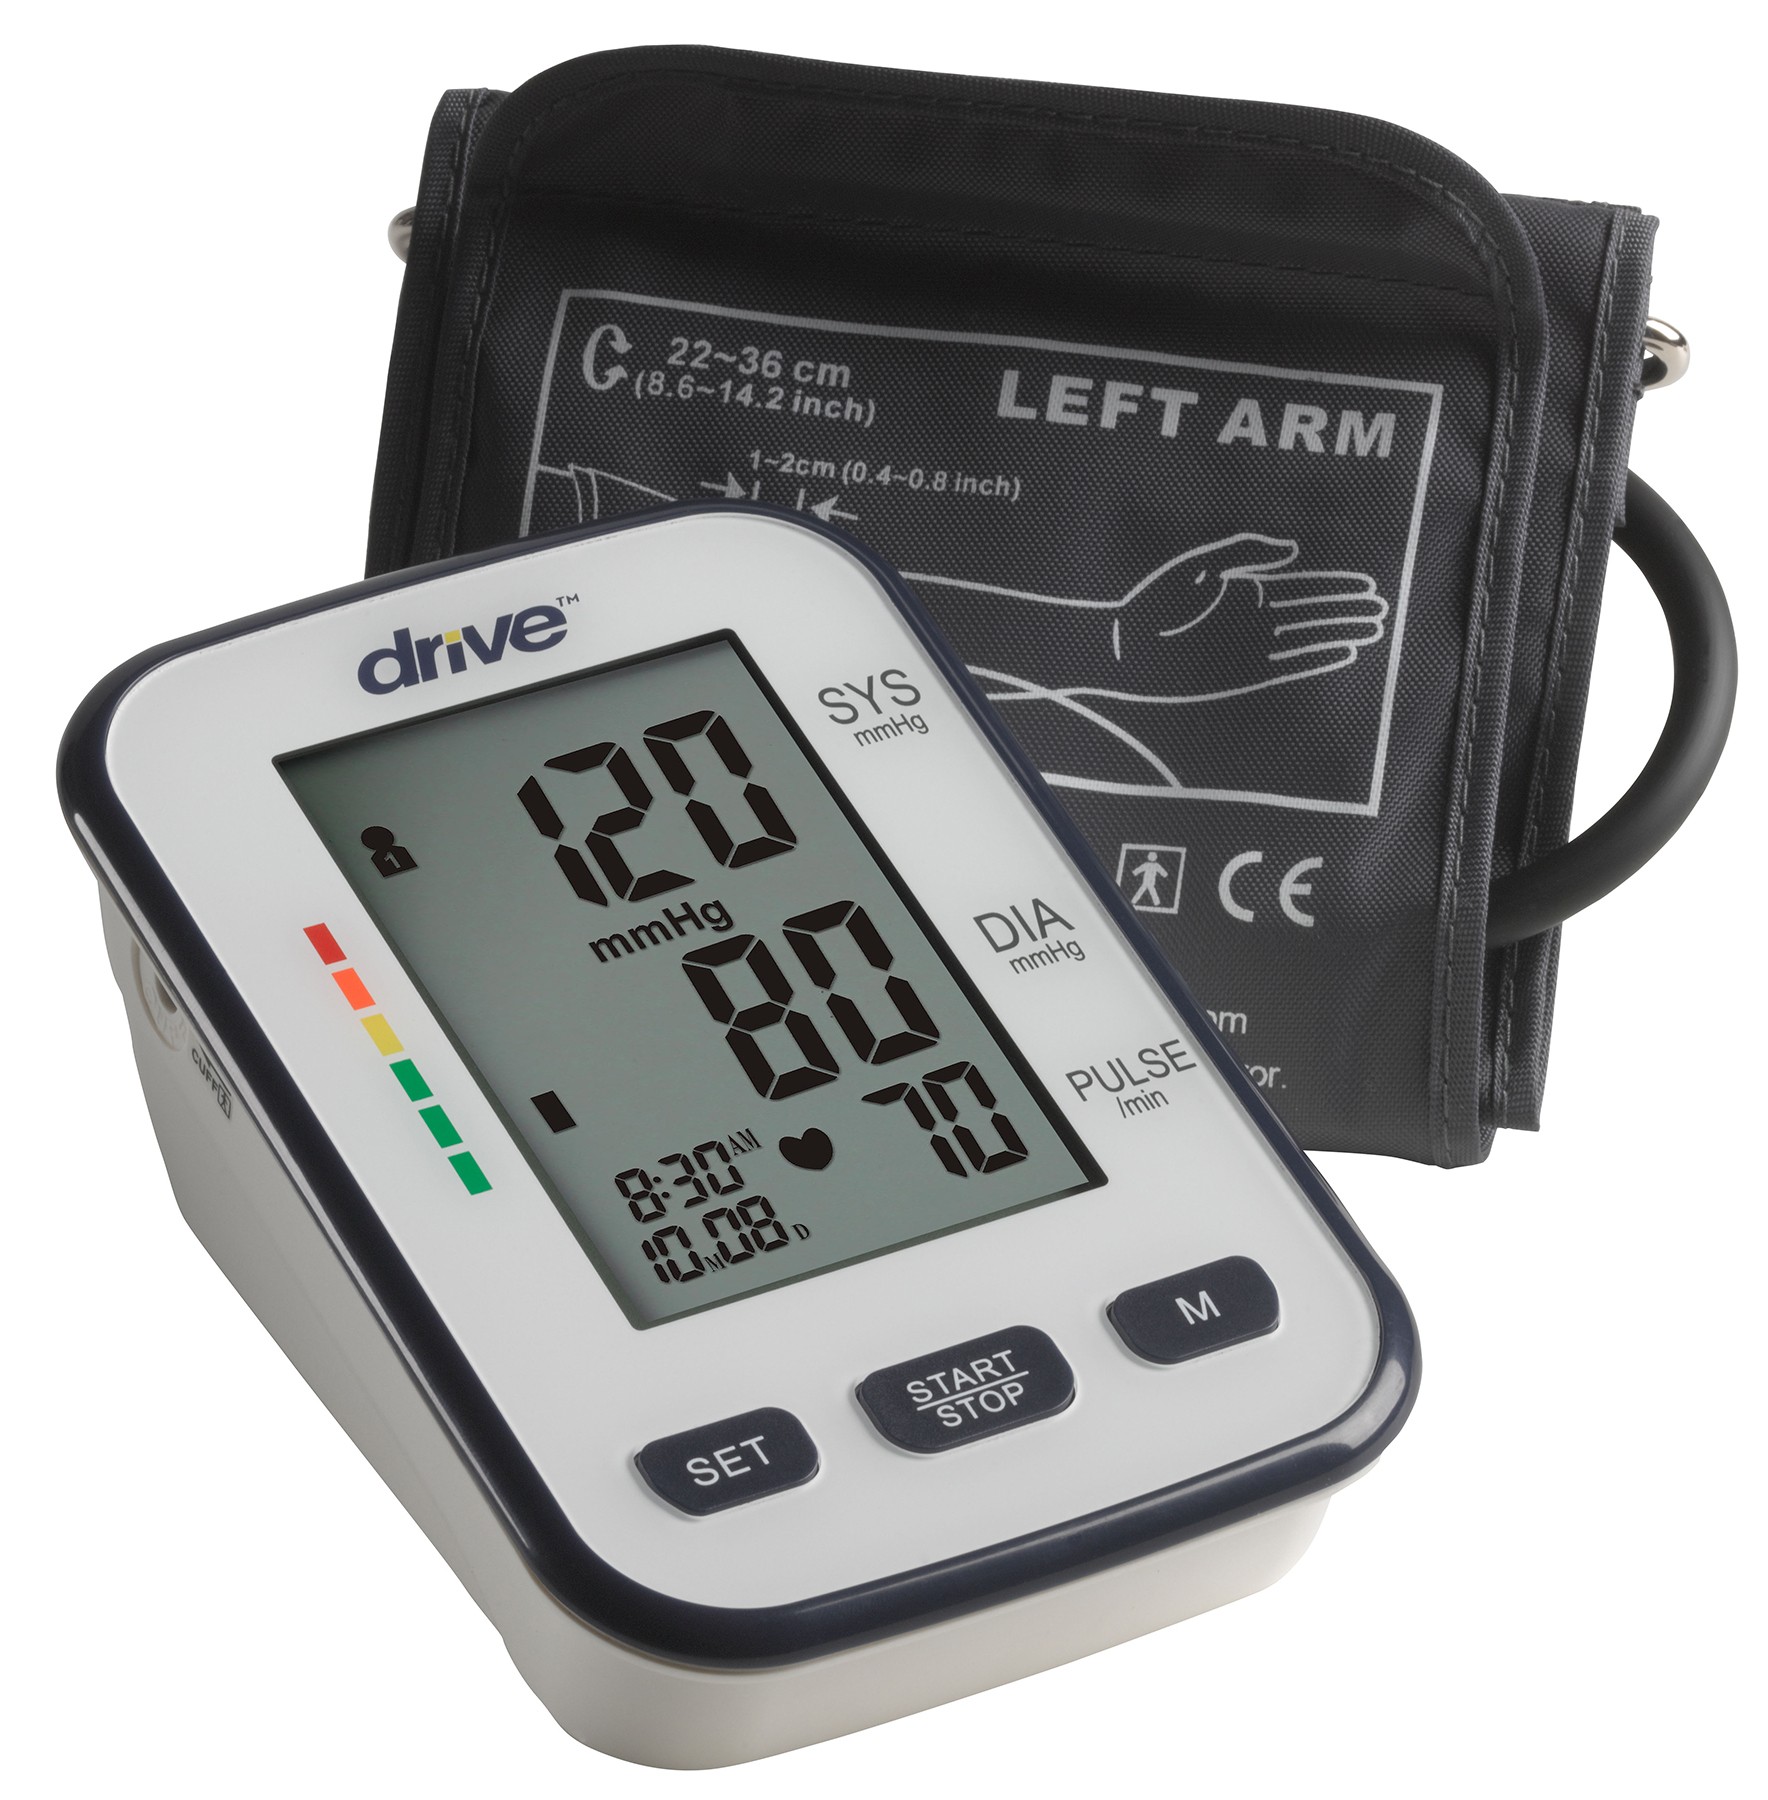 Advocate Upper Arm Blood Pressure Monitor, Large Cuff